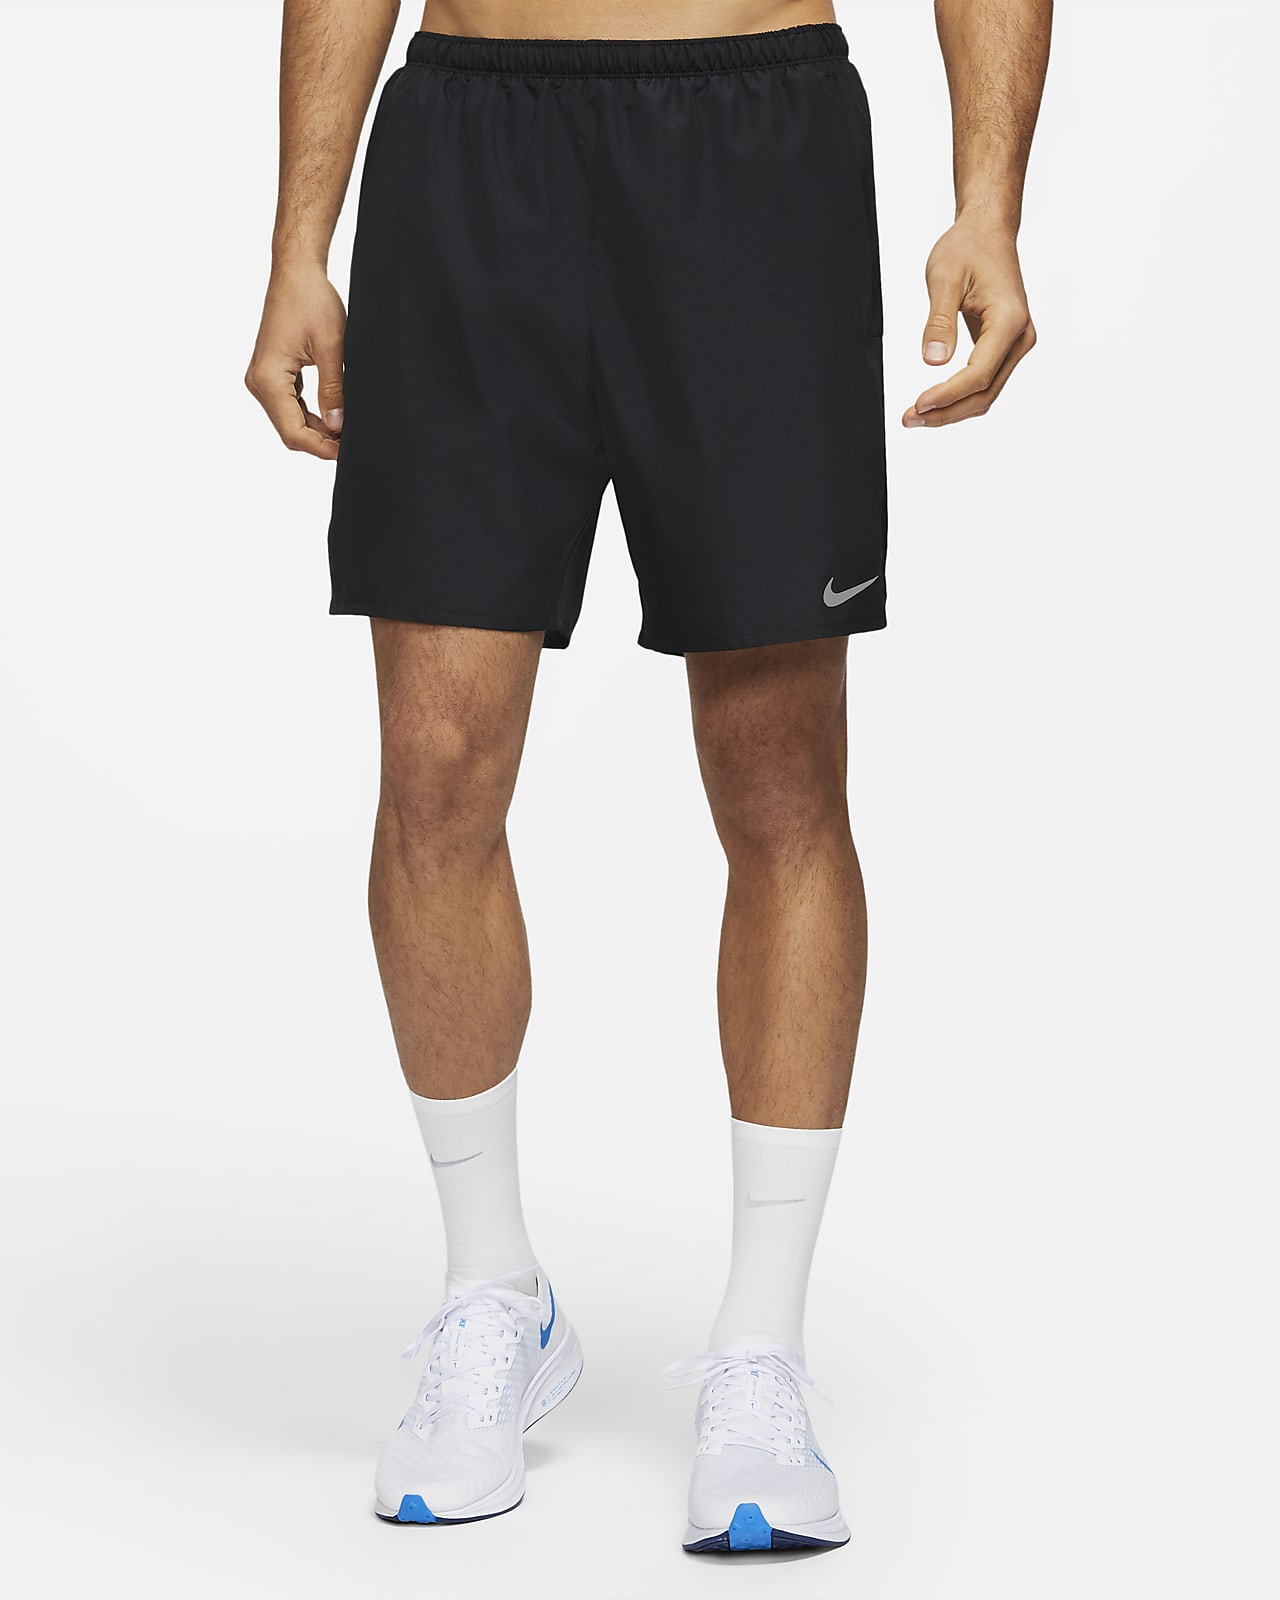 filosofía sin embargo silencio Shorts de running 2 en 1 para hombre Nike Challenger. Nike MX